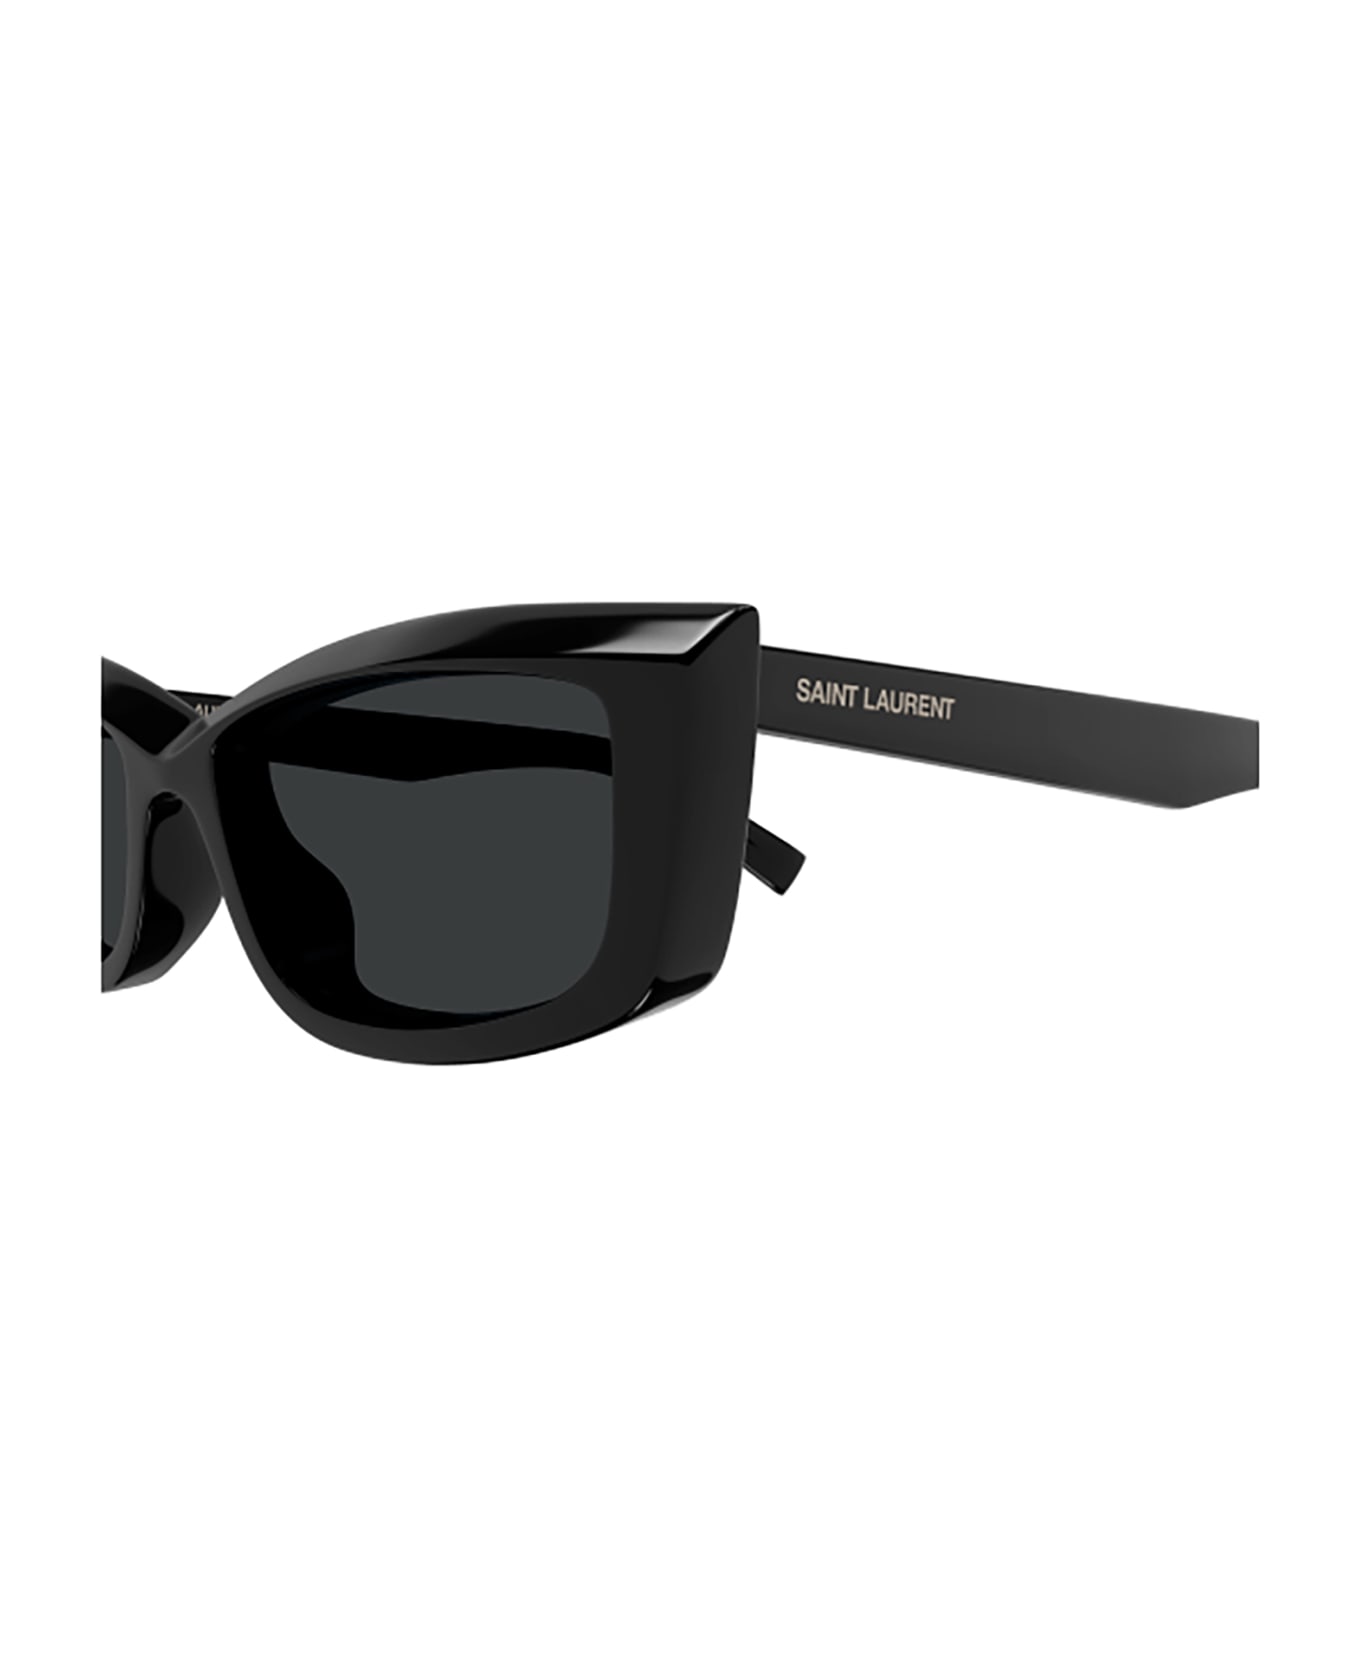 Saint Laurent Eyewear SL 658 Sunglasses - Black Black Black サングラス